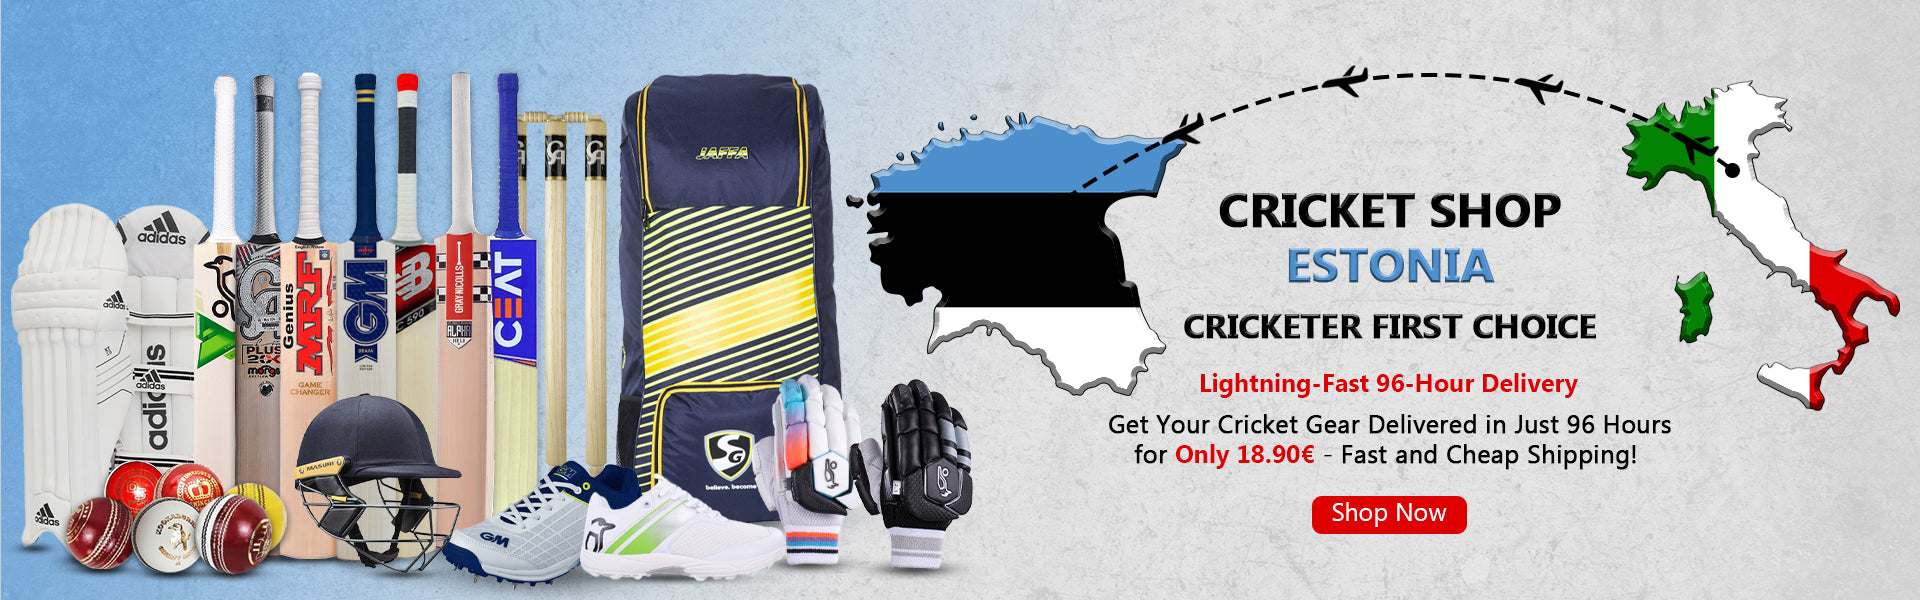 Cricket Shop Estonia | Cricketer first Choice